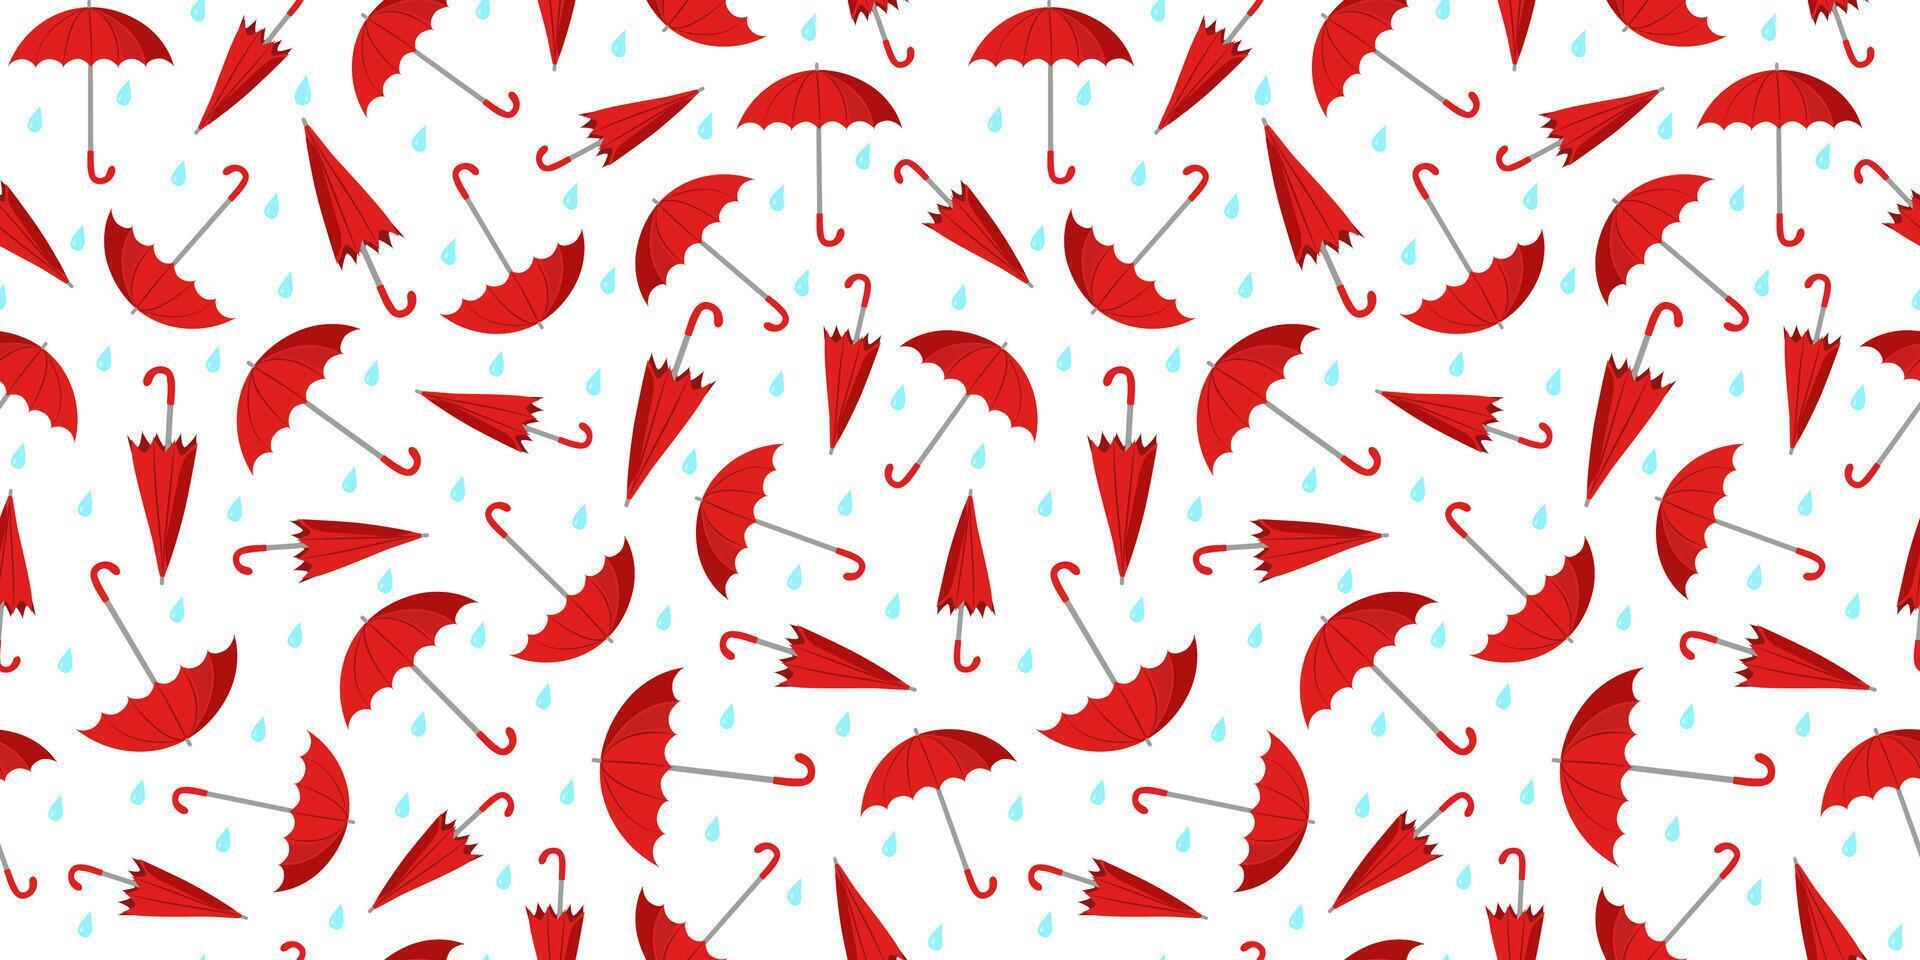 rot Regenschirme Muster. offen, geschlossen Regenschirm und Regentropfen. Regen Jahreszeit. regnerisch Wetter. eben Stil. nahtlos Hintergrund. vektor